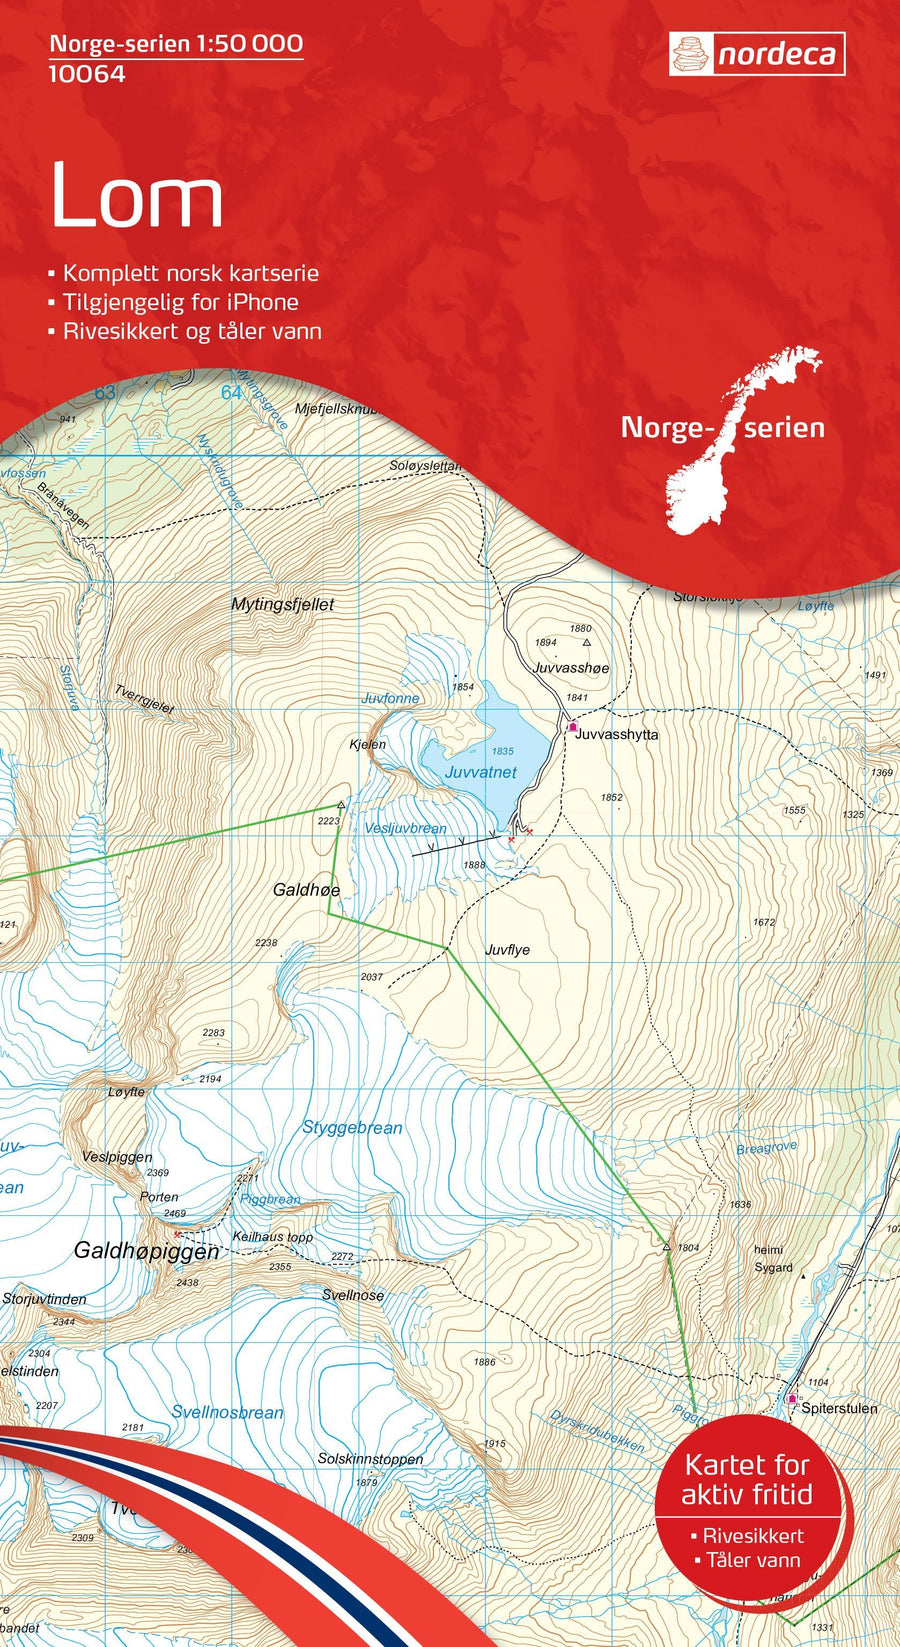 Carte de randonnée n° 10064 - Lom (Norvège) | Nordeca - Norge-serien carte pliée Nordeca 